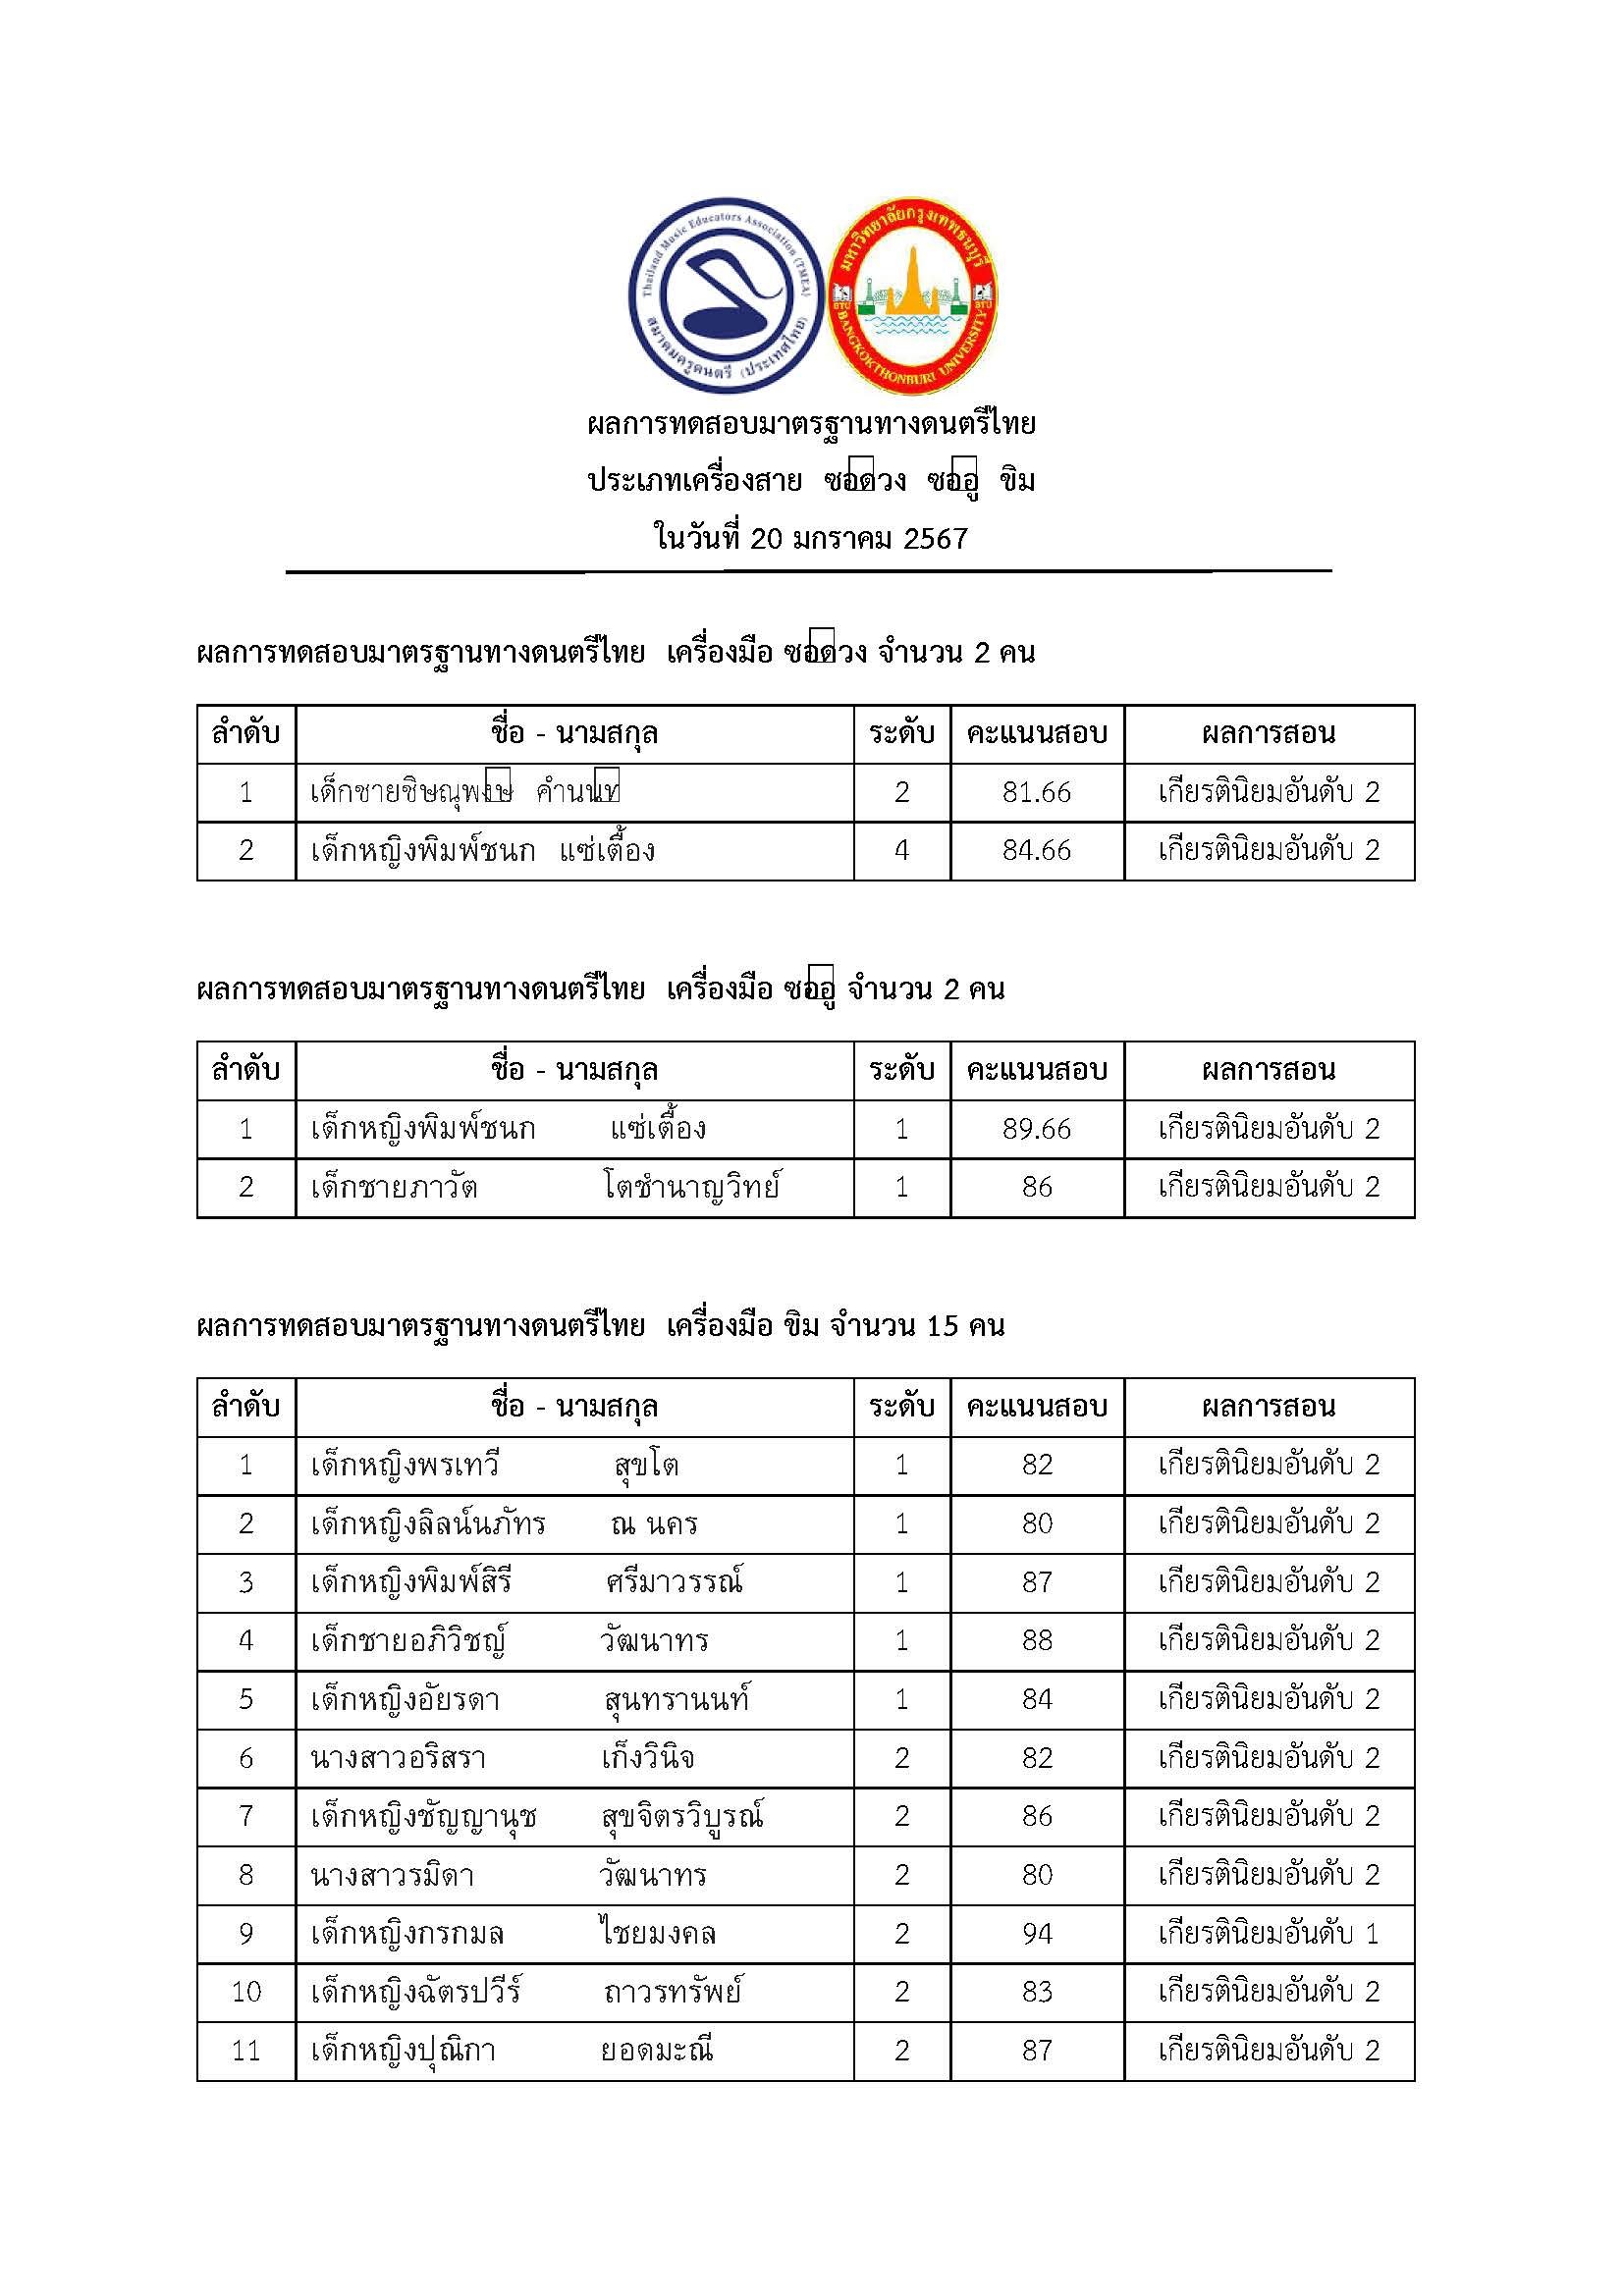 ประกาศผลการสอบวัดระดับดนตรีไทย โดย สมาคมครูดนตรี (ประเทศไทย)